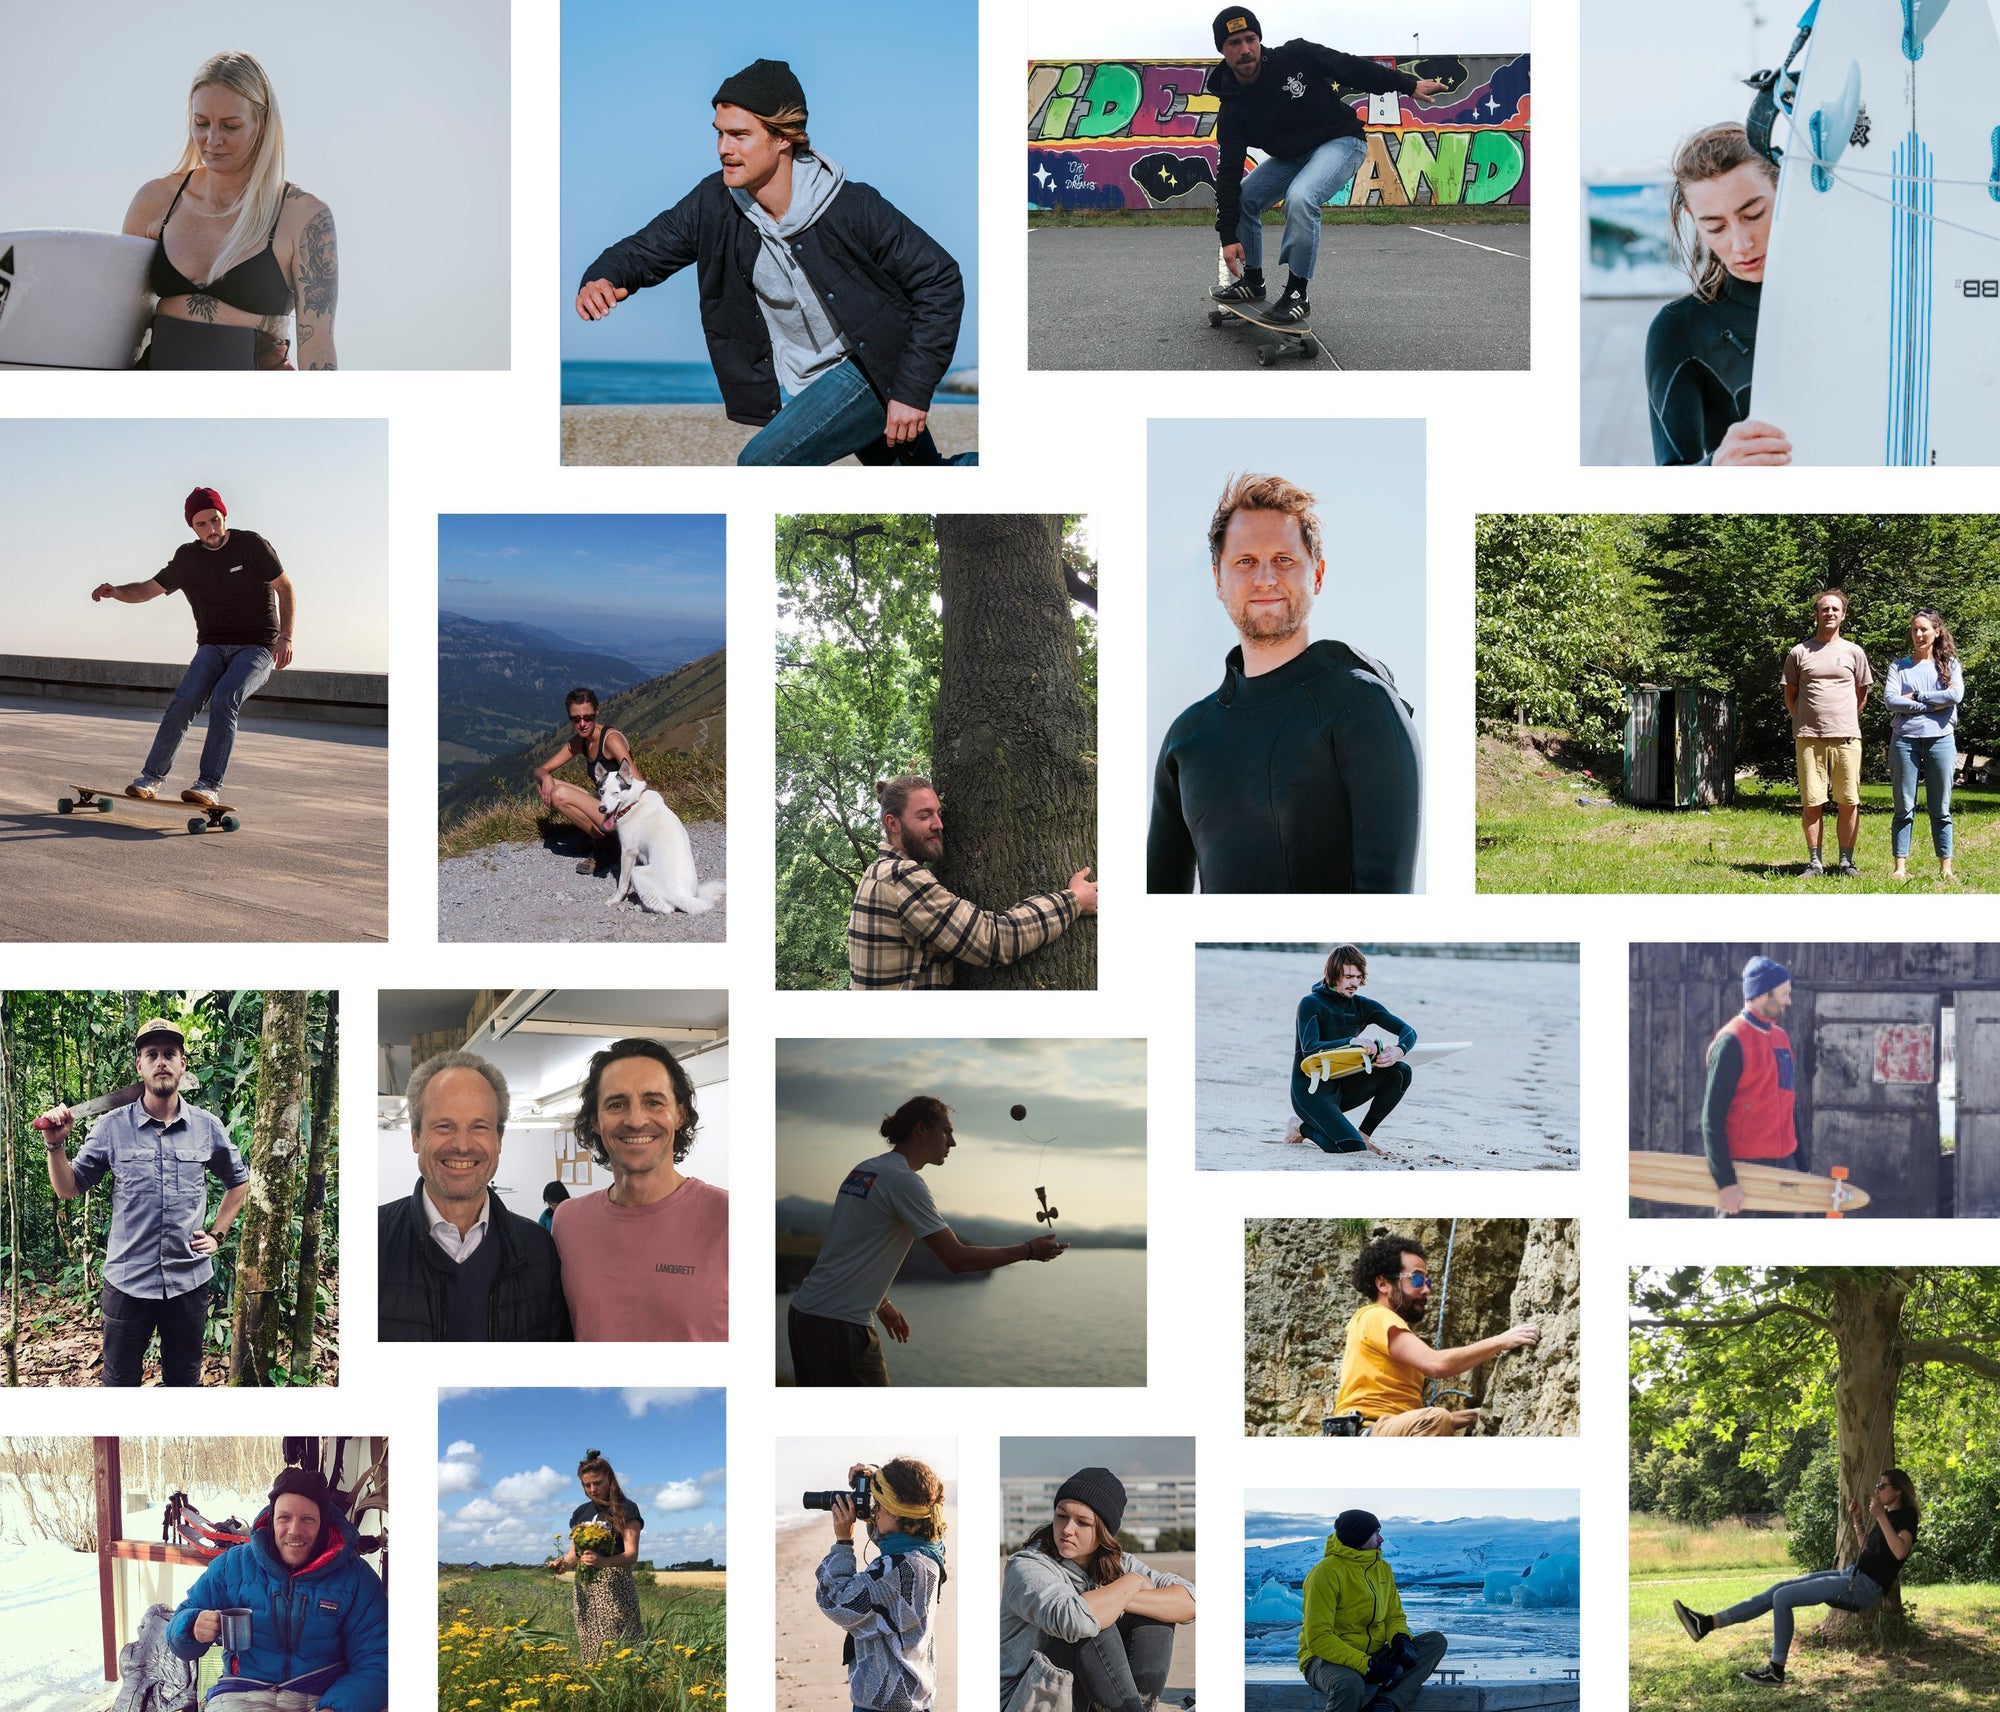 Das LANGBRETT Team - Idealisten, Outdoorentuisiasten, Designer, Surfer, Kletterer, Fotografen, geschulte Berater und Quereinsteiger. 